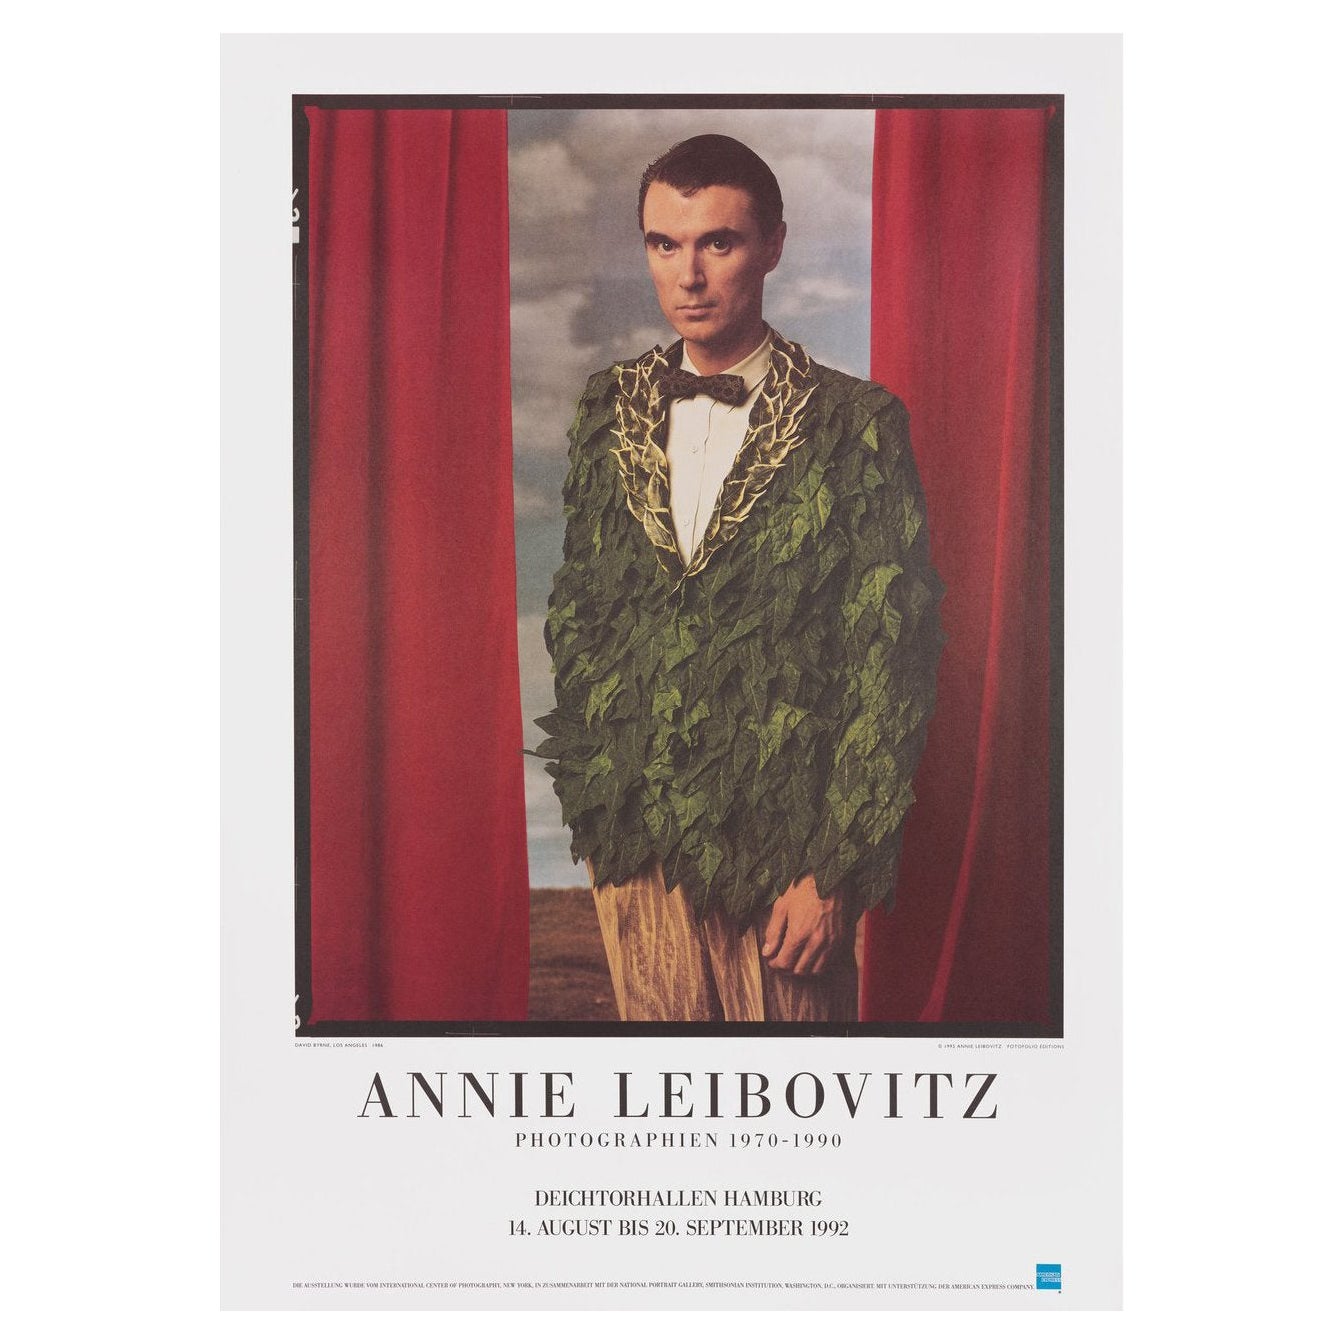 Annie Leibovitz: Photographien 1970-1990 1992 German A1 Exhibition Poster